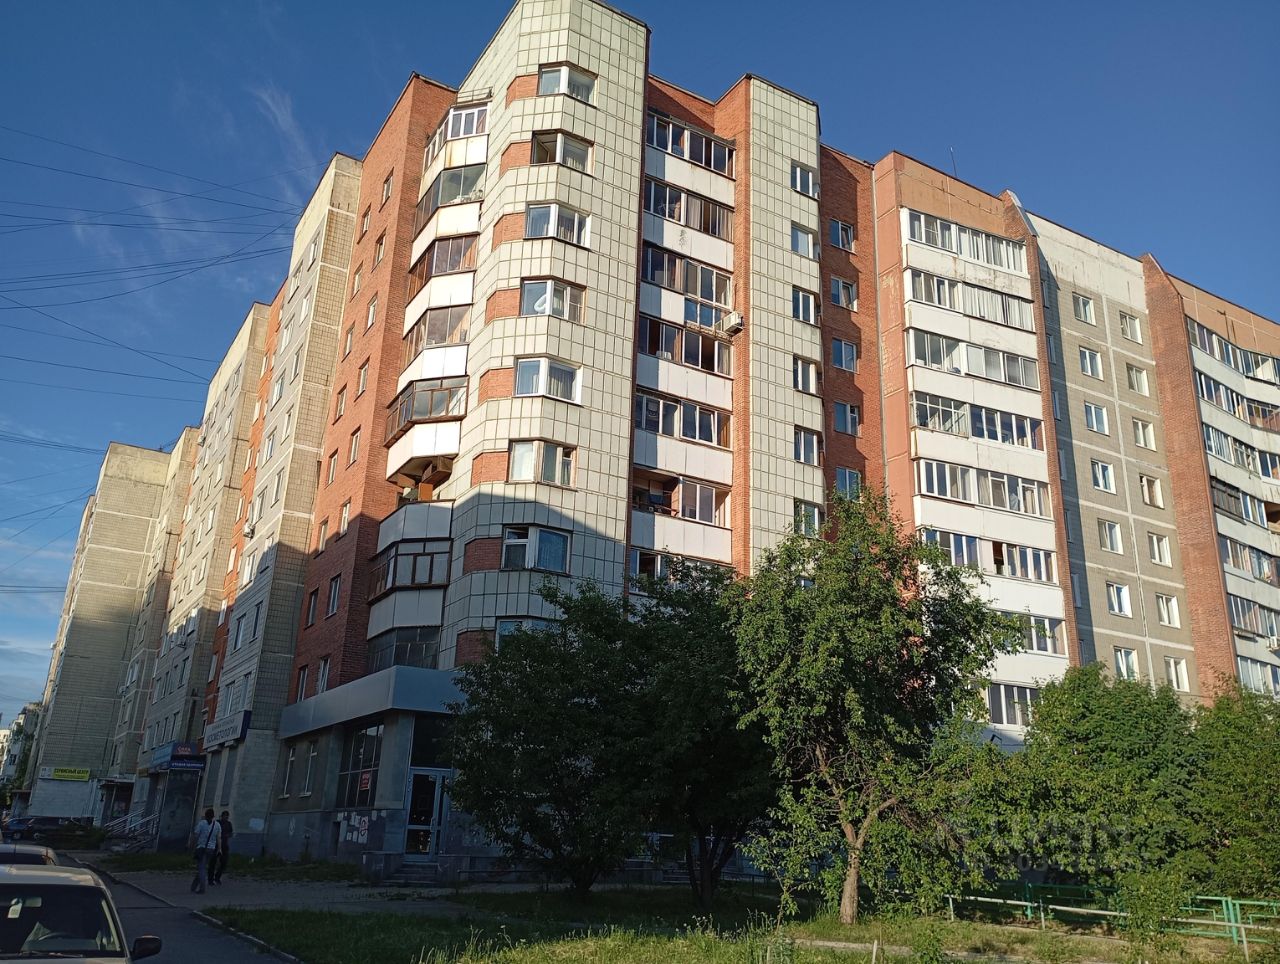 Сдается помещение 68 кв.м на 1 этаже в Екатеринбурге. Современное здание, удобное расположение, зеленая зона рядом.